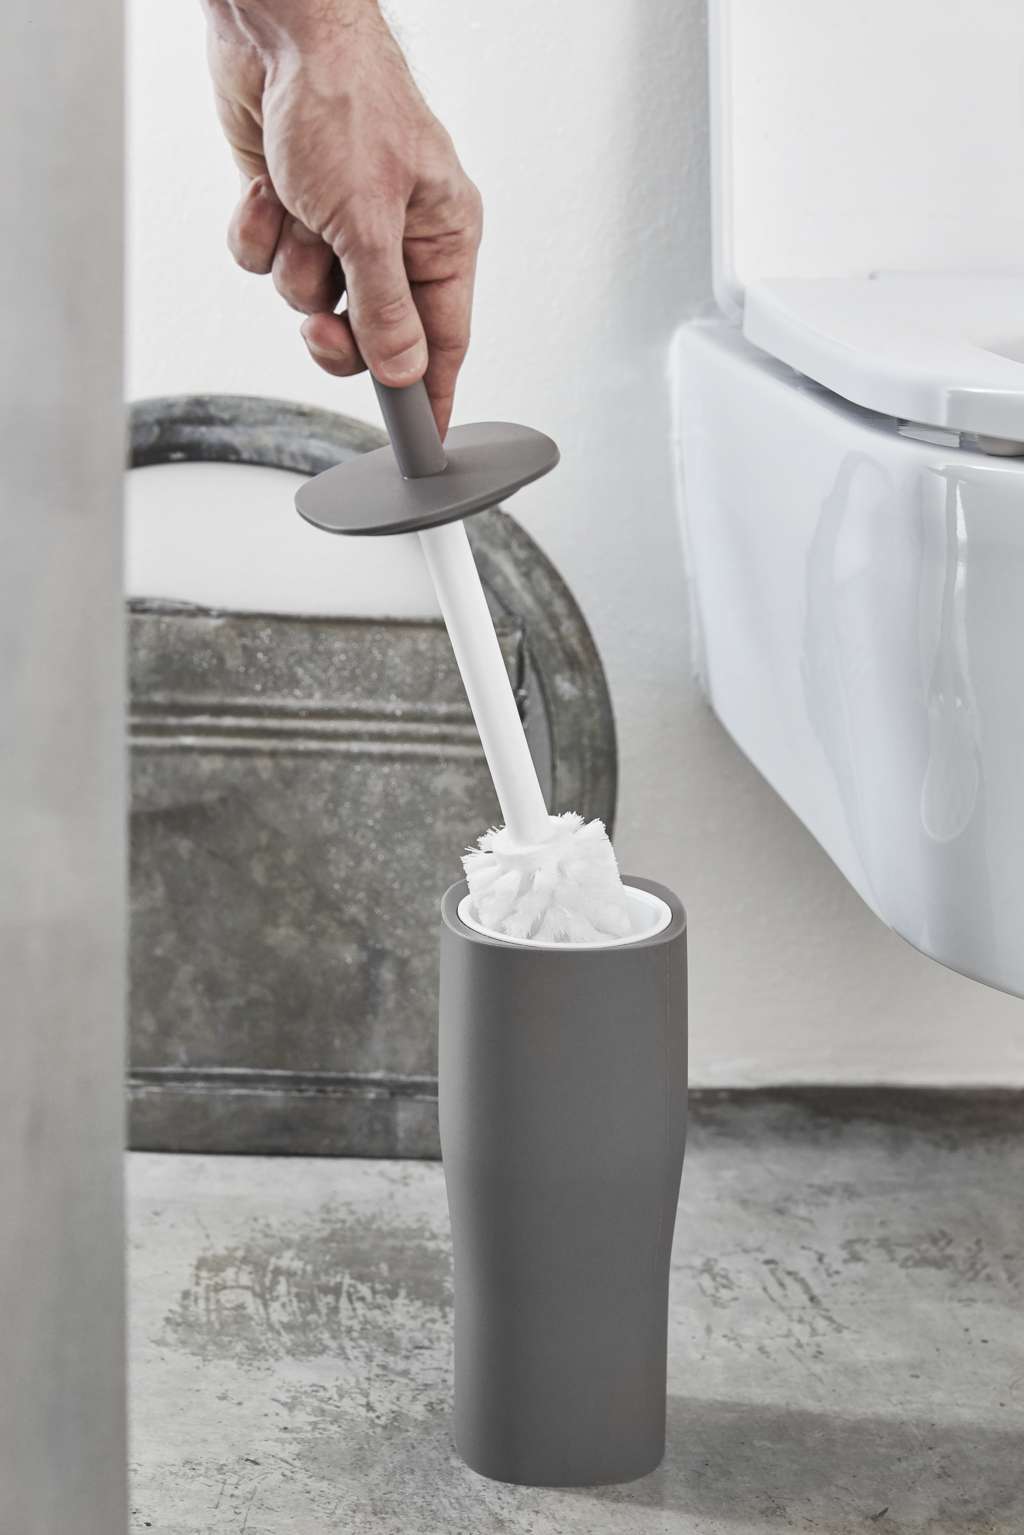 Umbra - Corsa Toilet Brush - White